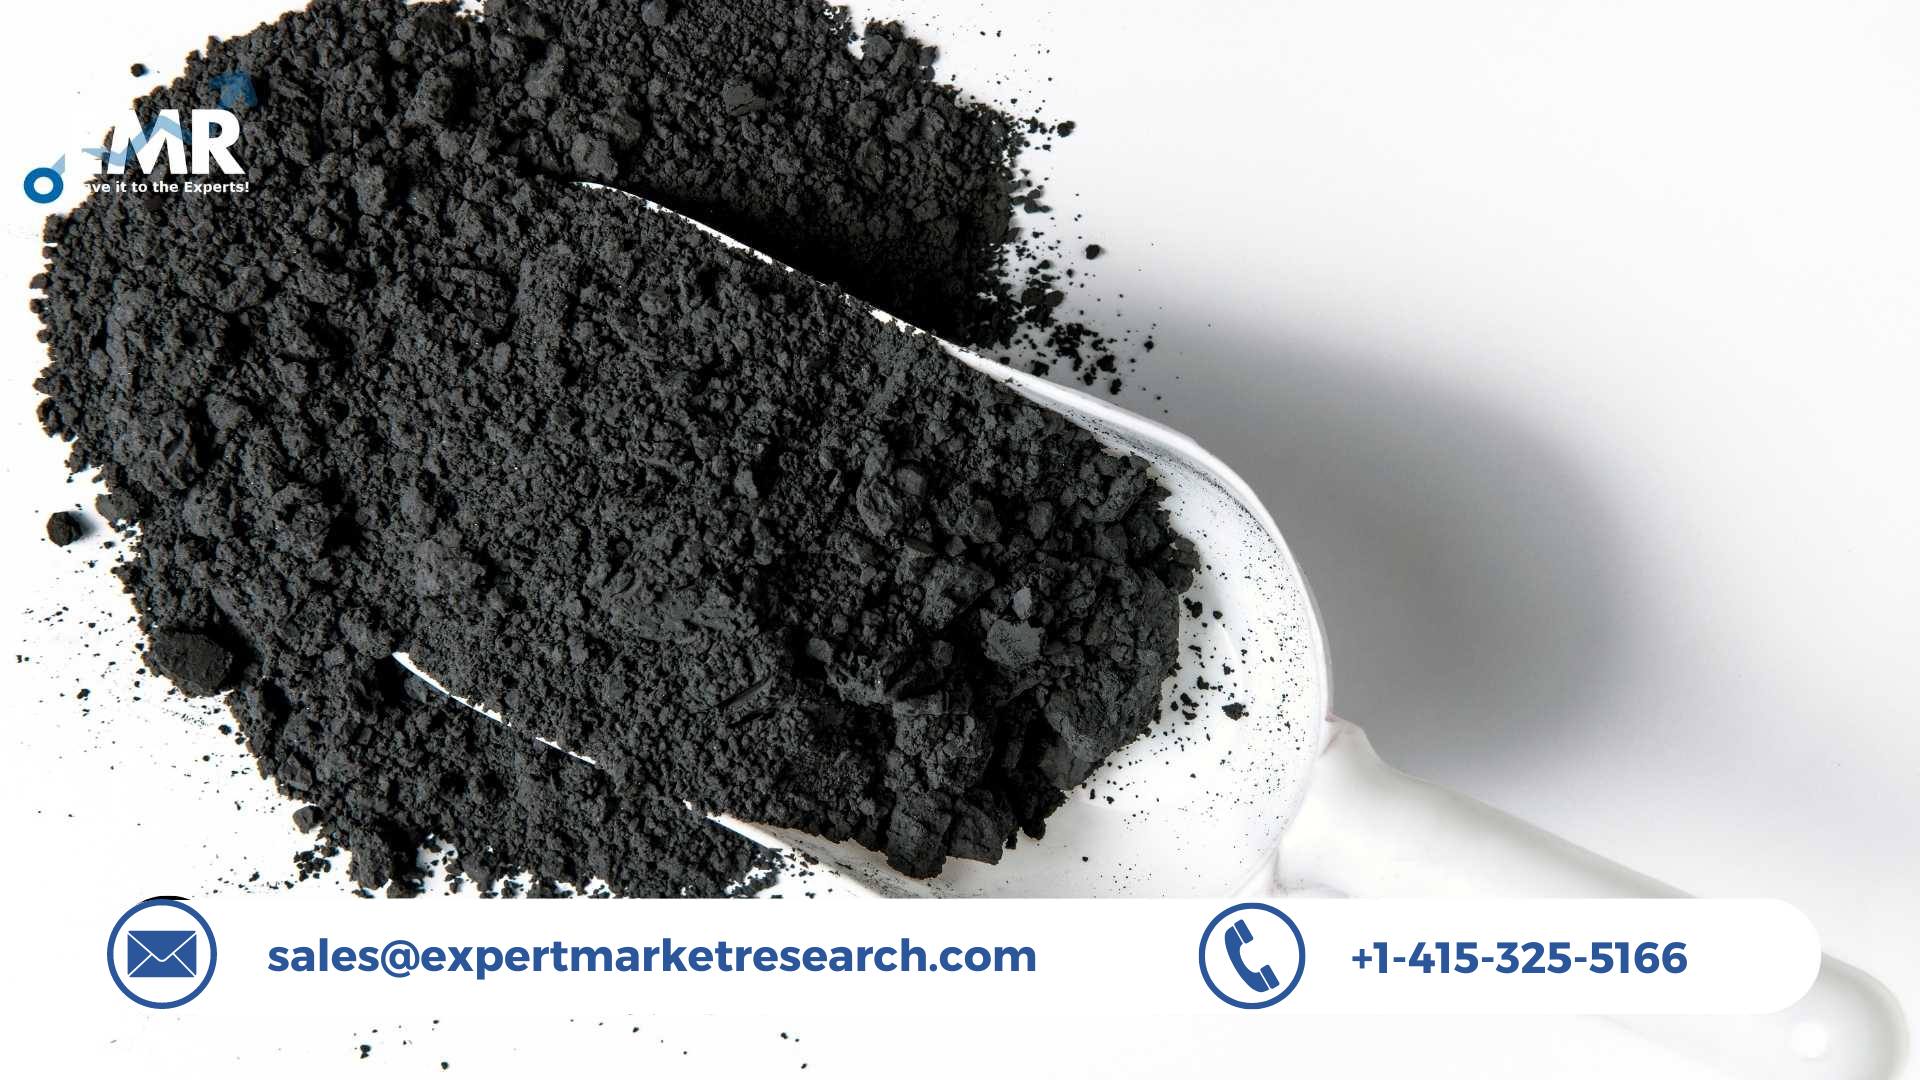 Cerium Oxide Nanoparticles Market